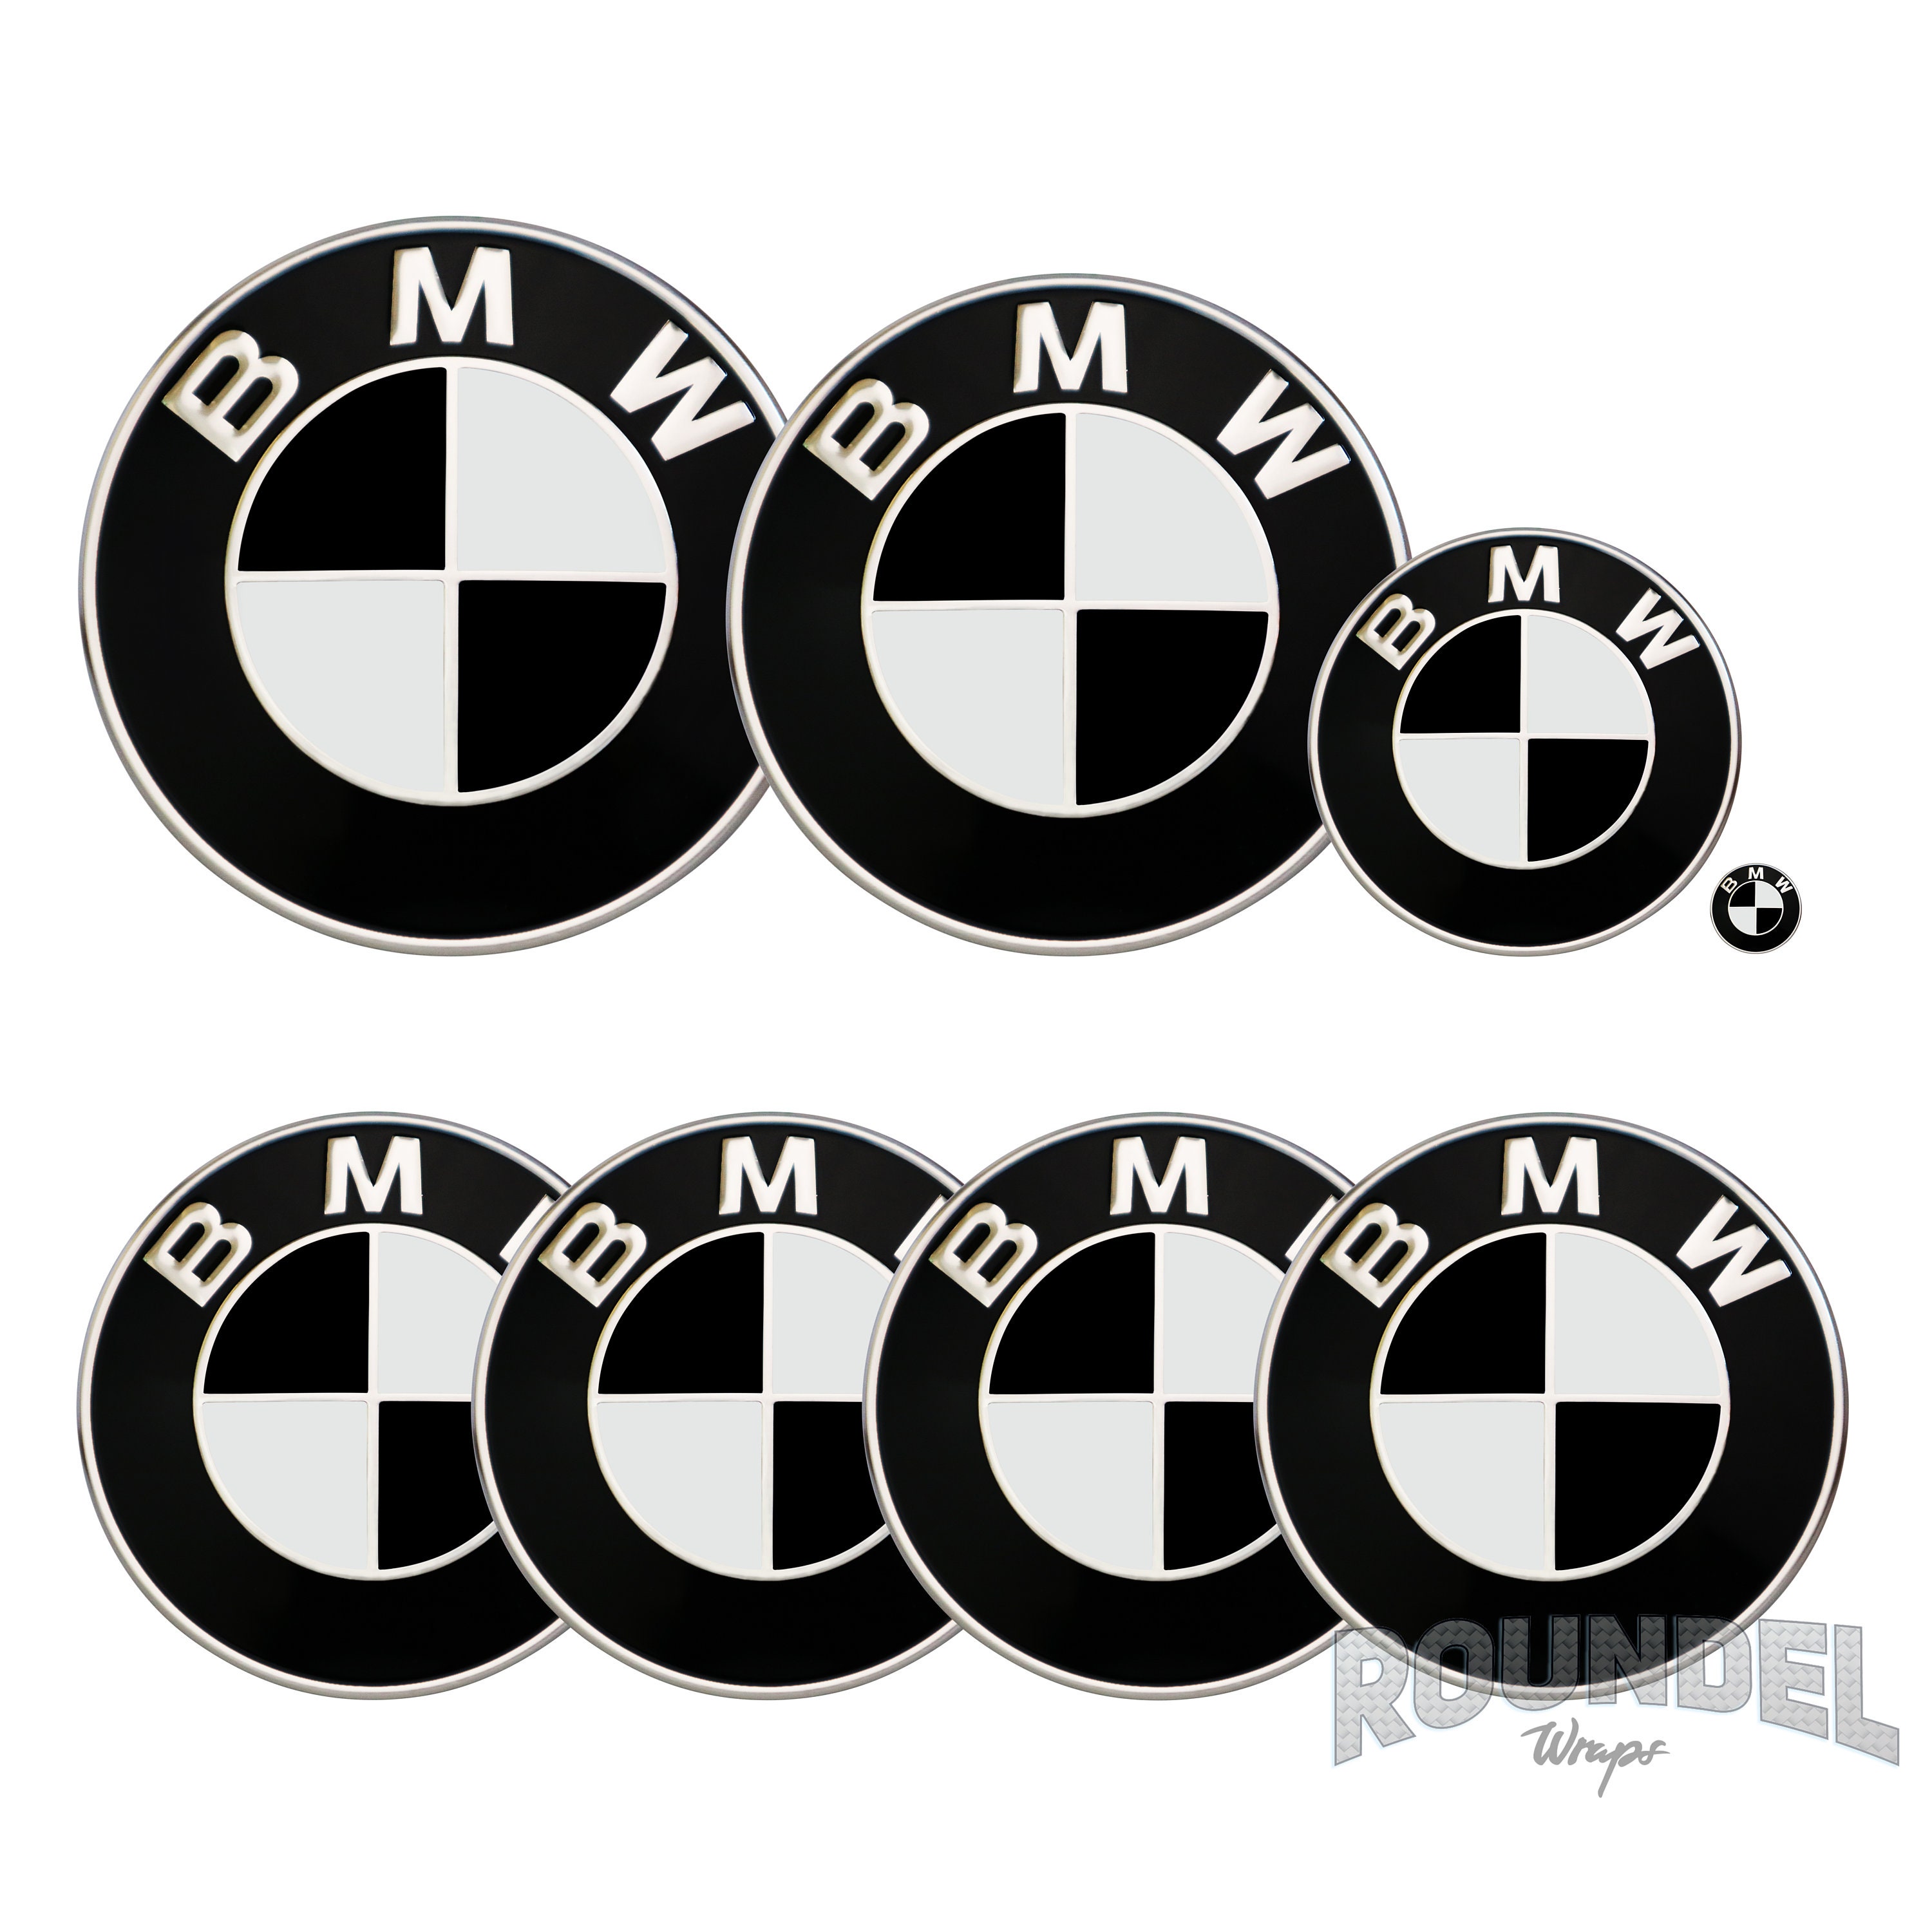 slecht humeur Genealogie component Voor BMW Badge Black Decals Vinyl Wrap Sticker Roundel Emblem | Etsy